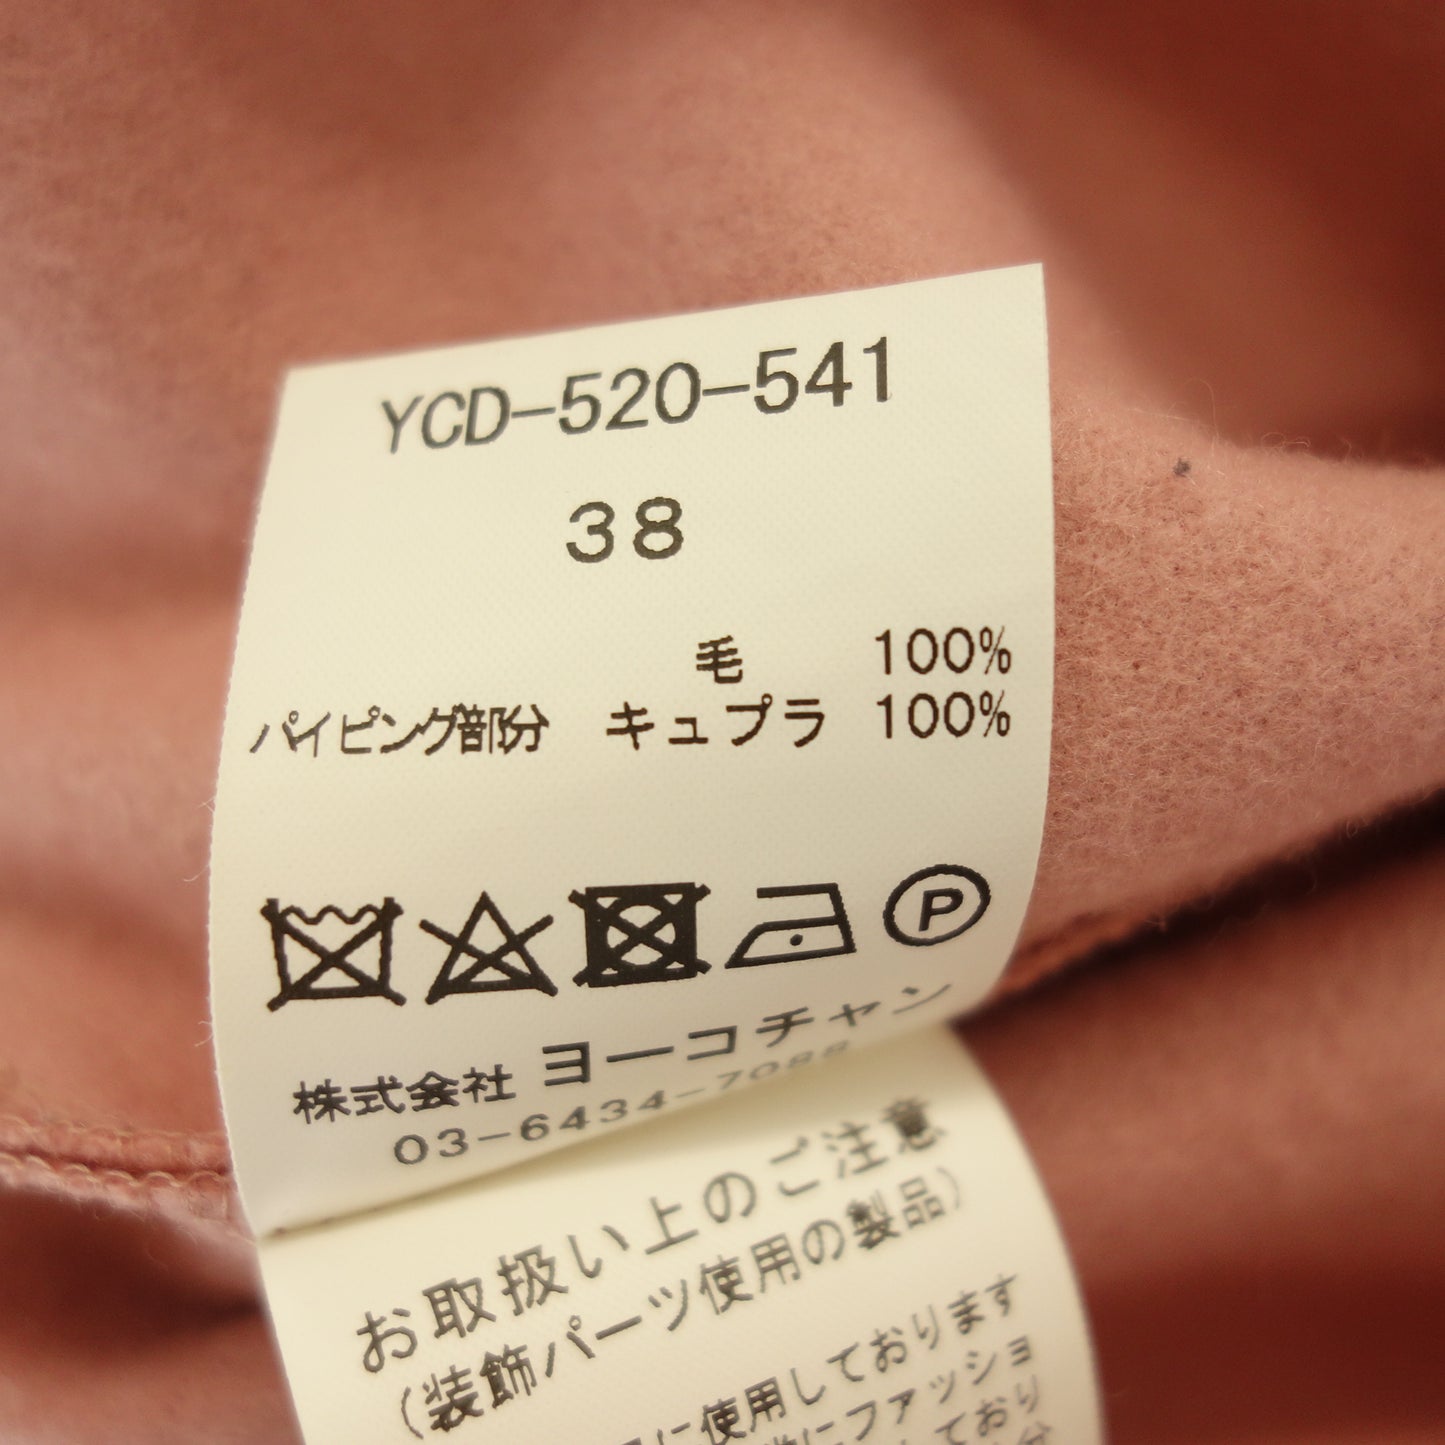 状况良好 ◆ Yoko Chan 无袖连衣裙 珍珠女士 粉色 尺寸 38 YCD-520-541 YOKO CHAN [AFB3] 